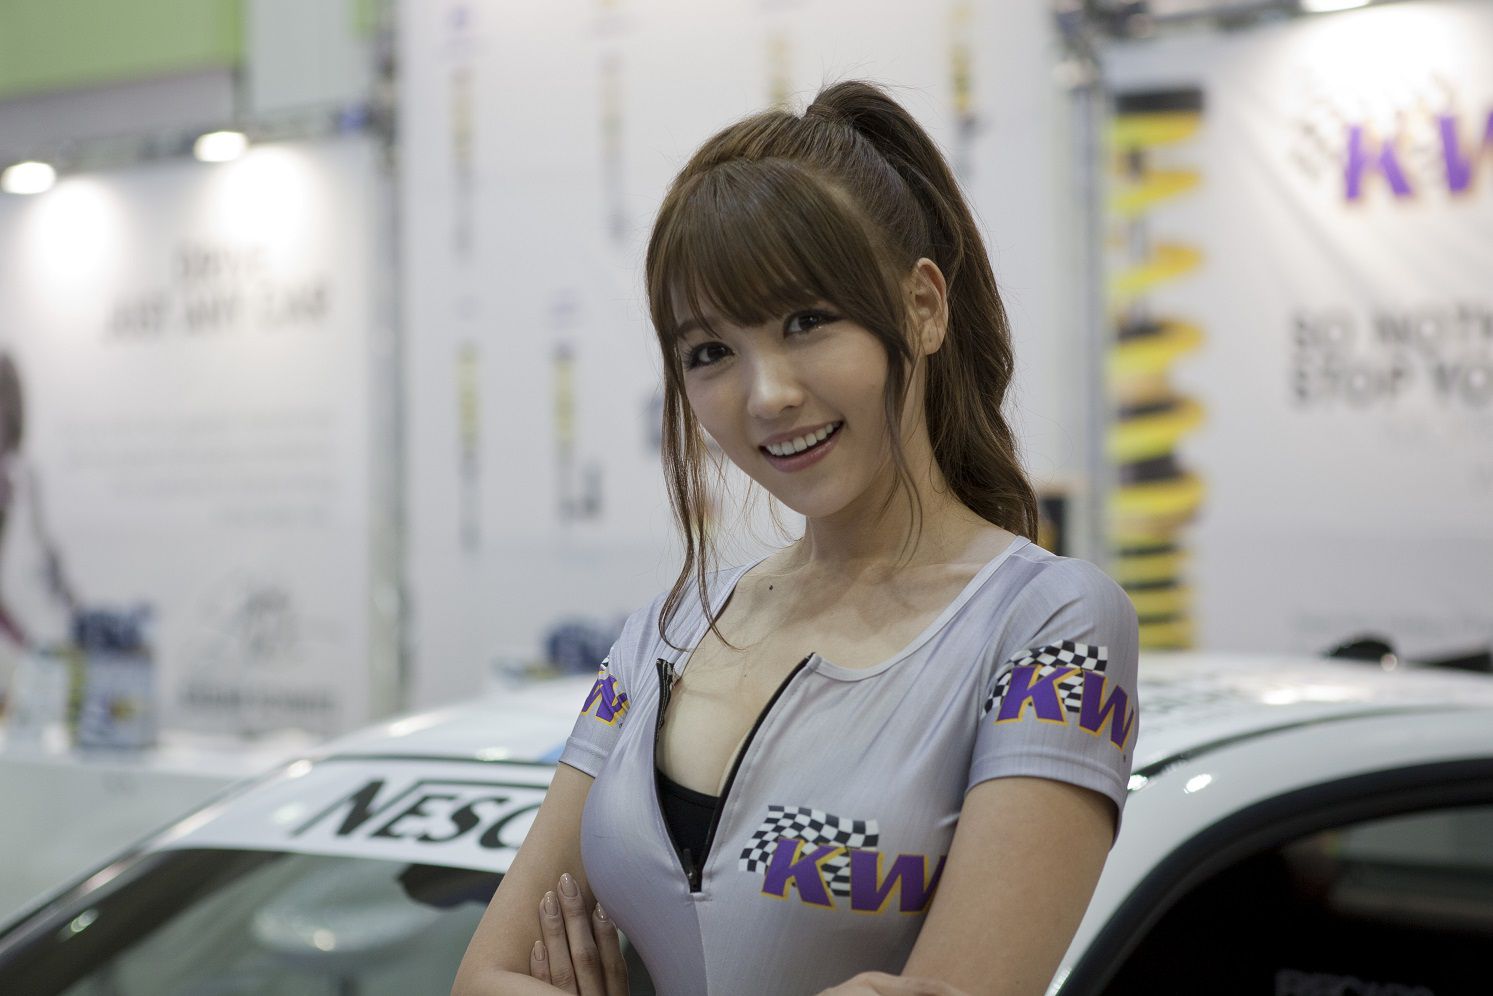 Ли авто модели. UMC Motor show 18+японки. Auto Salon girls korean car model. Ли автомашины.